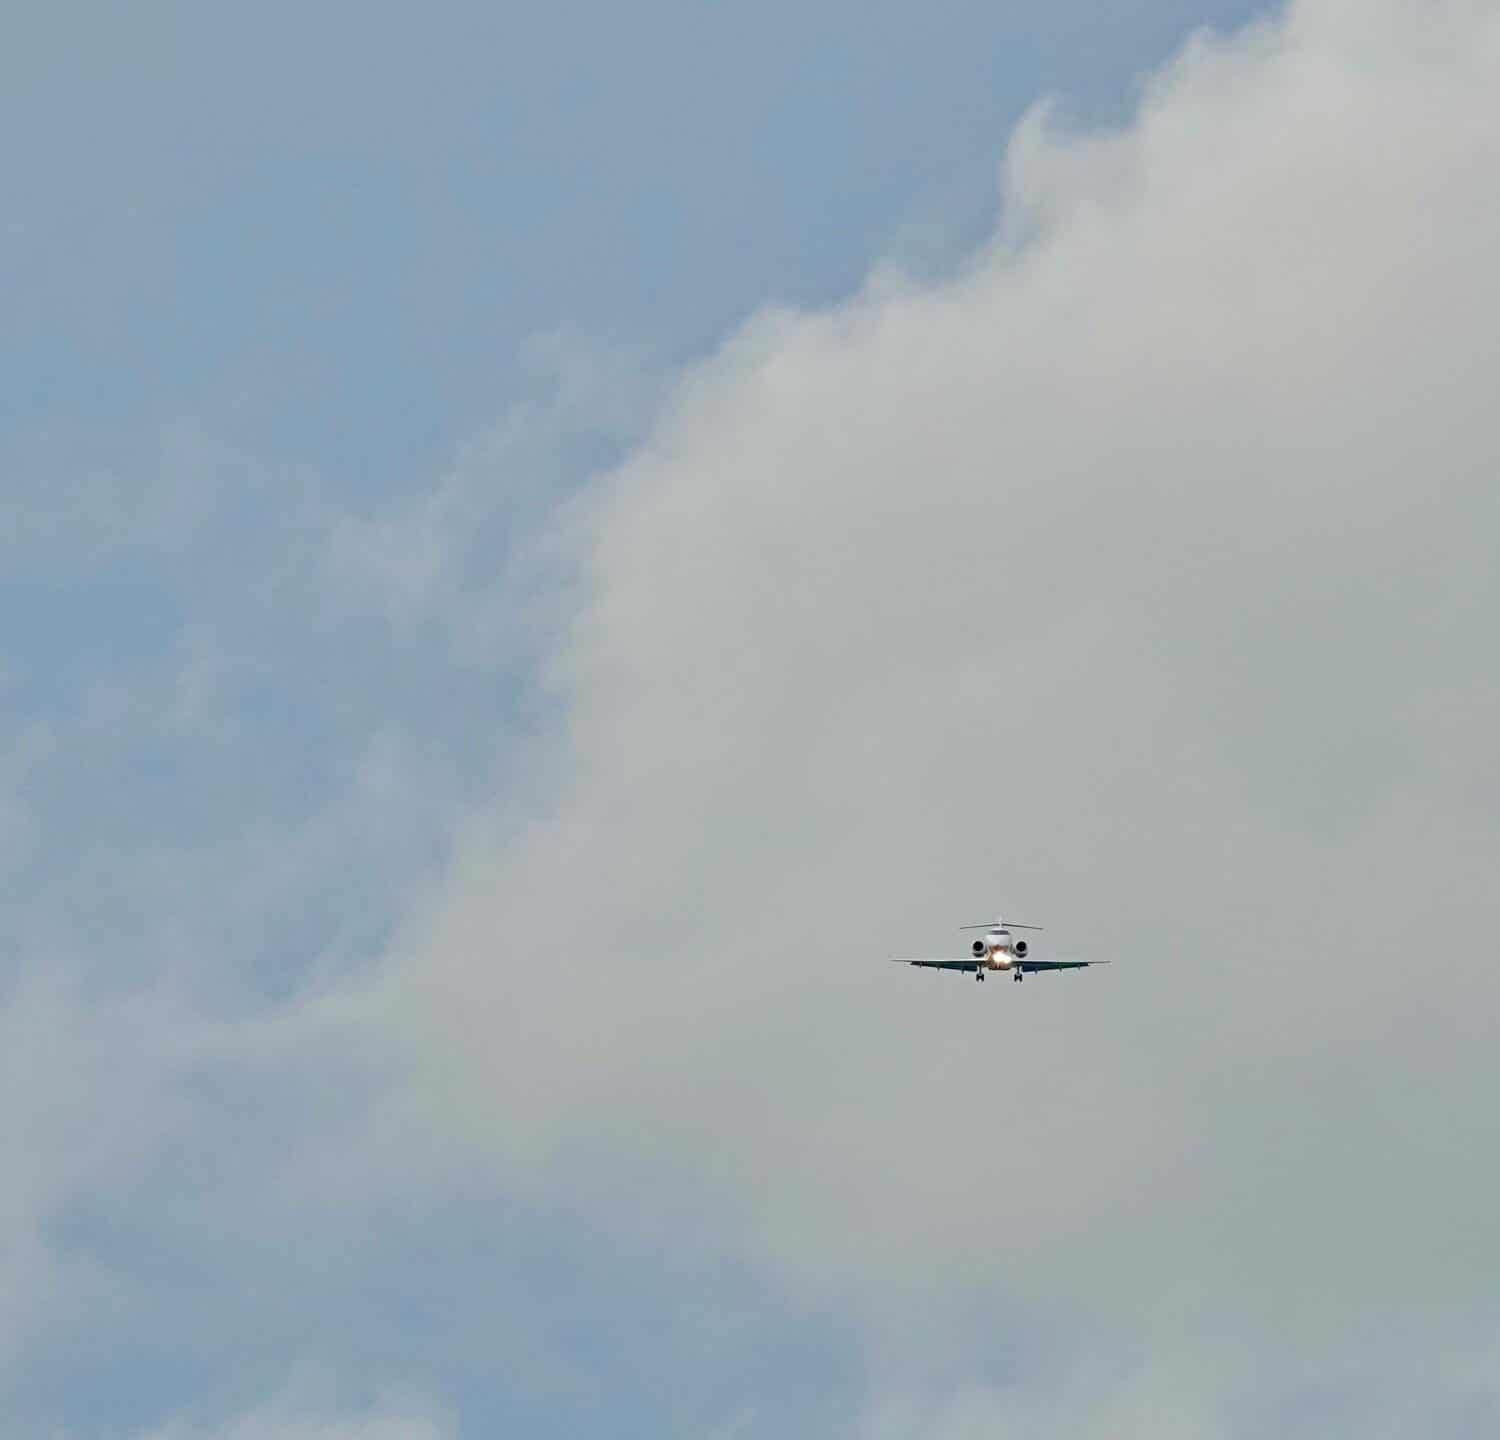                                                               Aeroplano in arrivo per un atterraggio con nuvole e cielo sullo sfondo